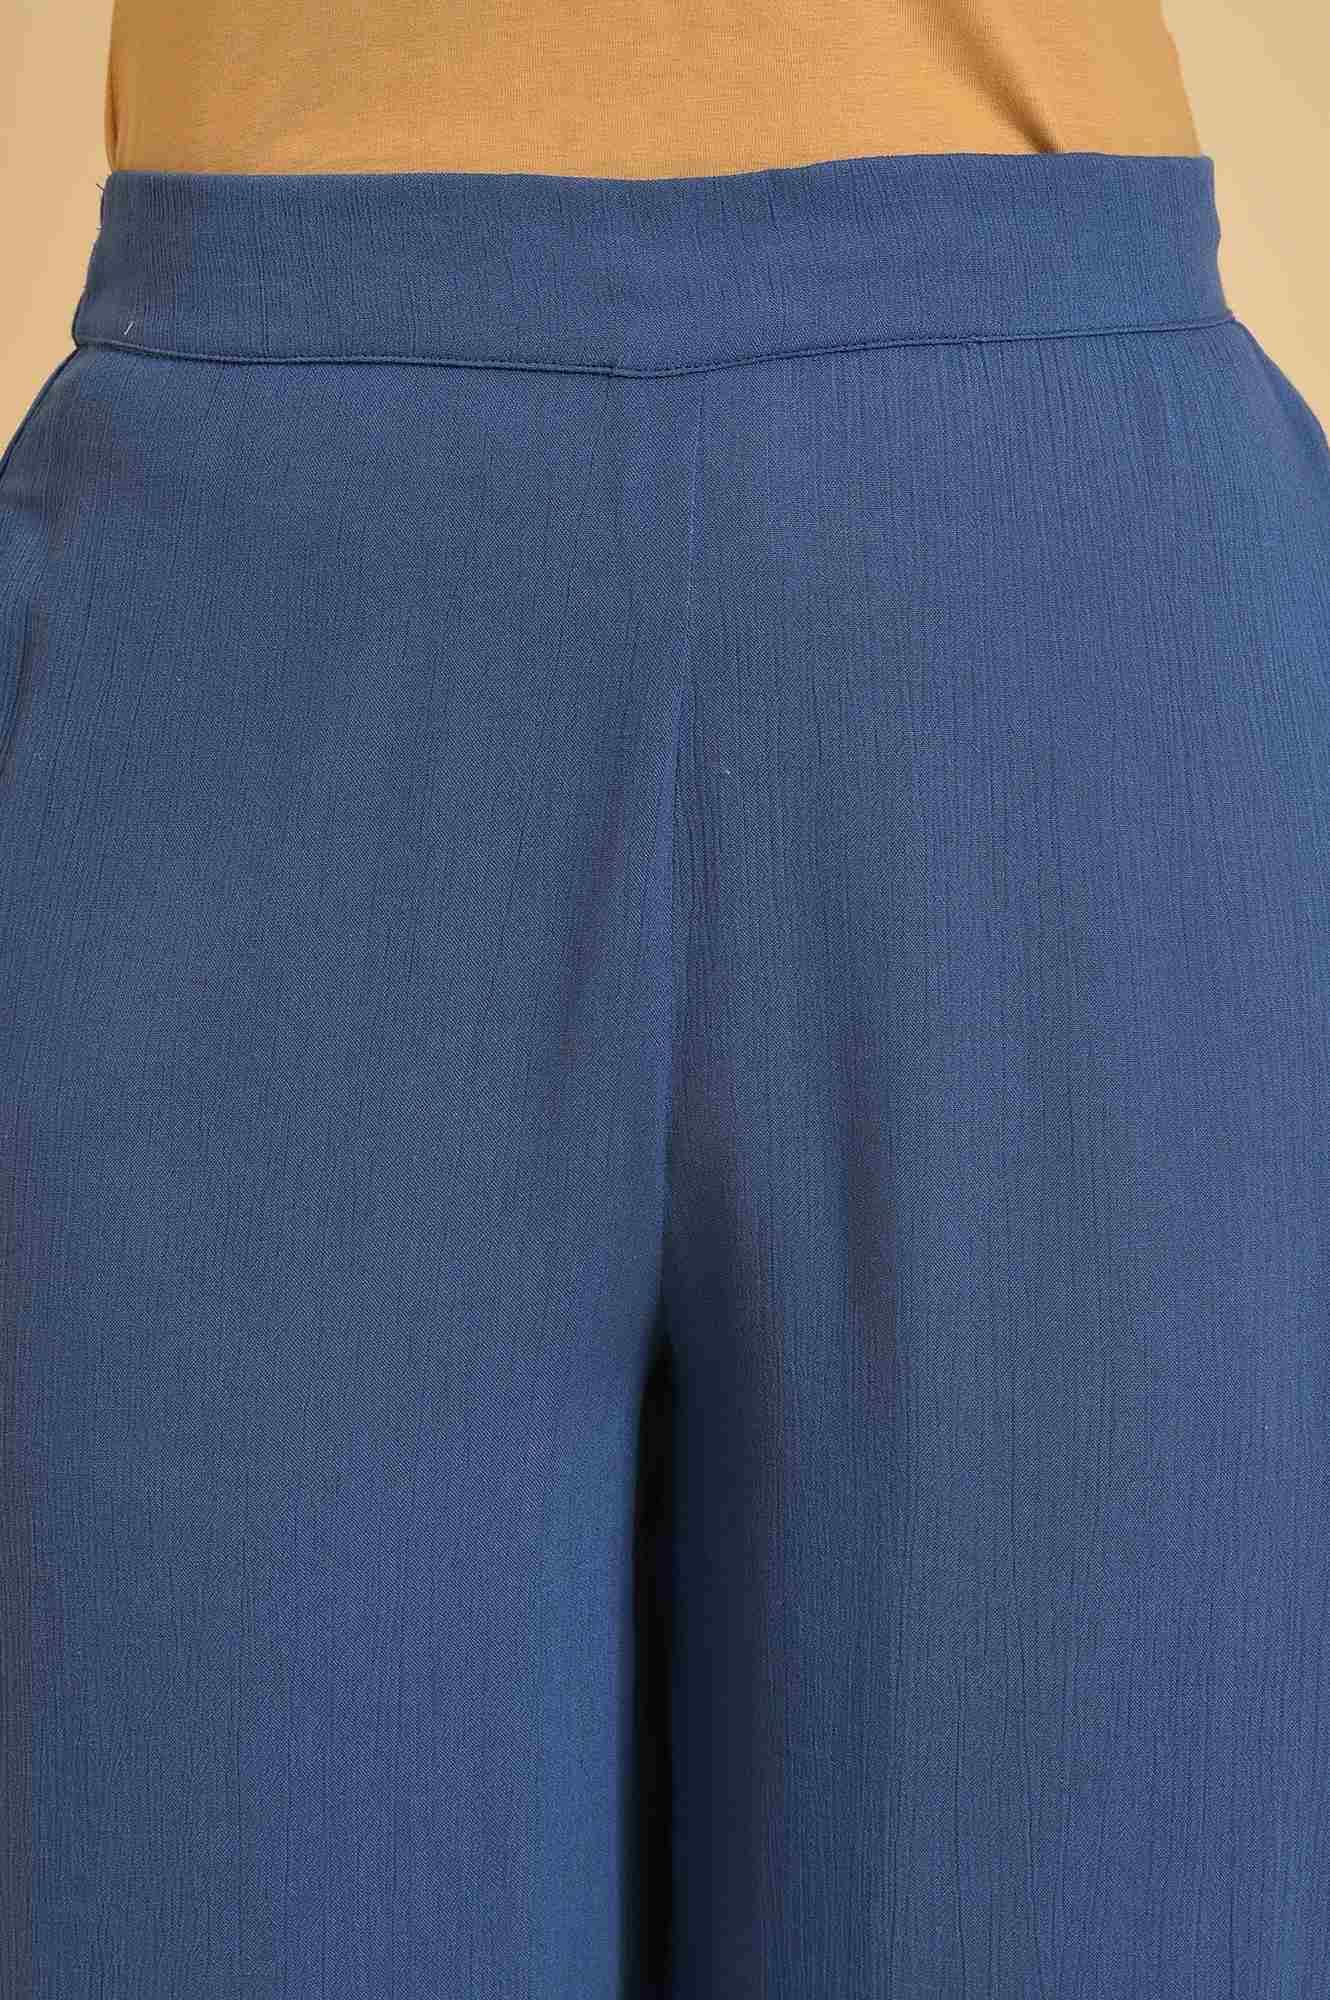 Blue Crinkle Parallel Pants - wforwoman